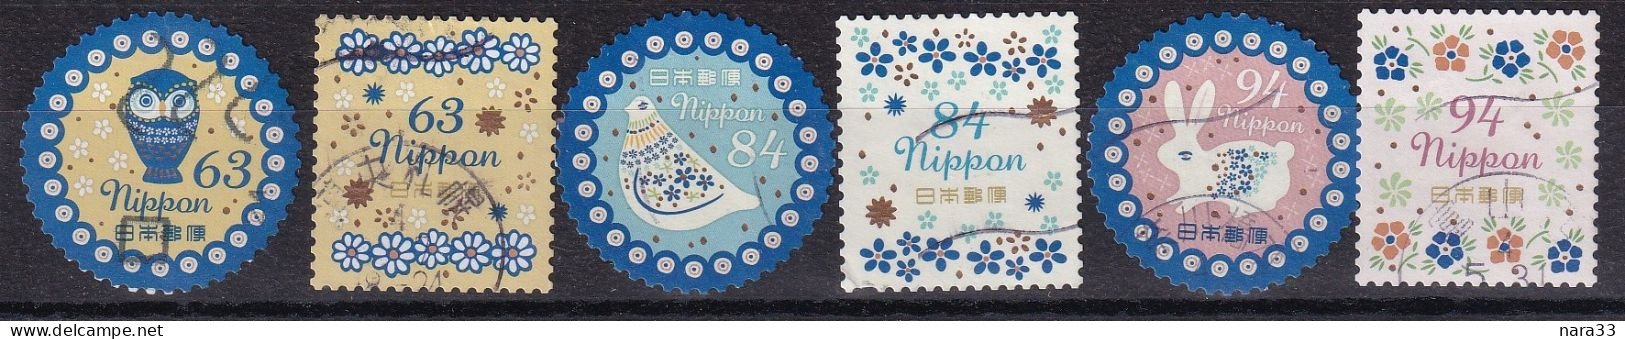 Japan - Celebration Design 63, 84, 94y 2022 - Used Stamps